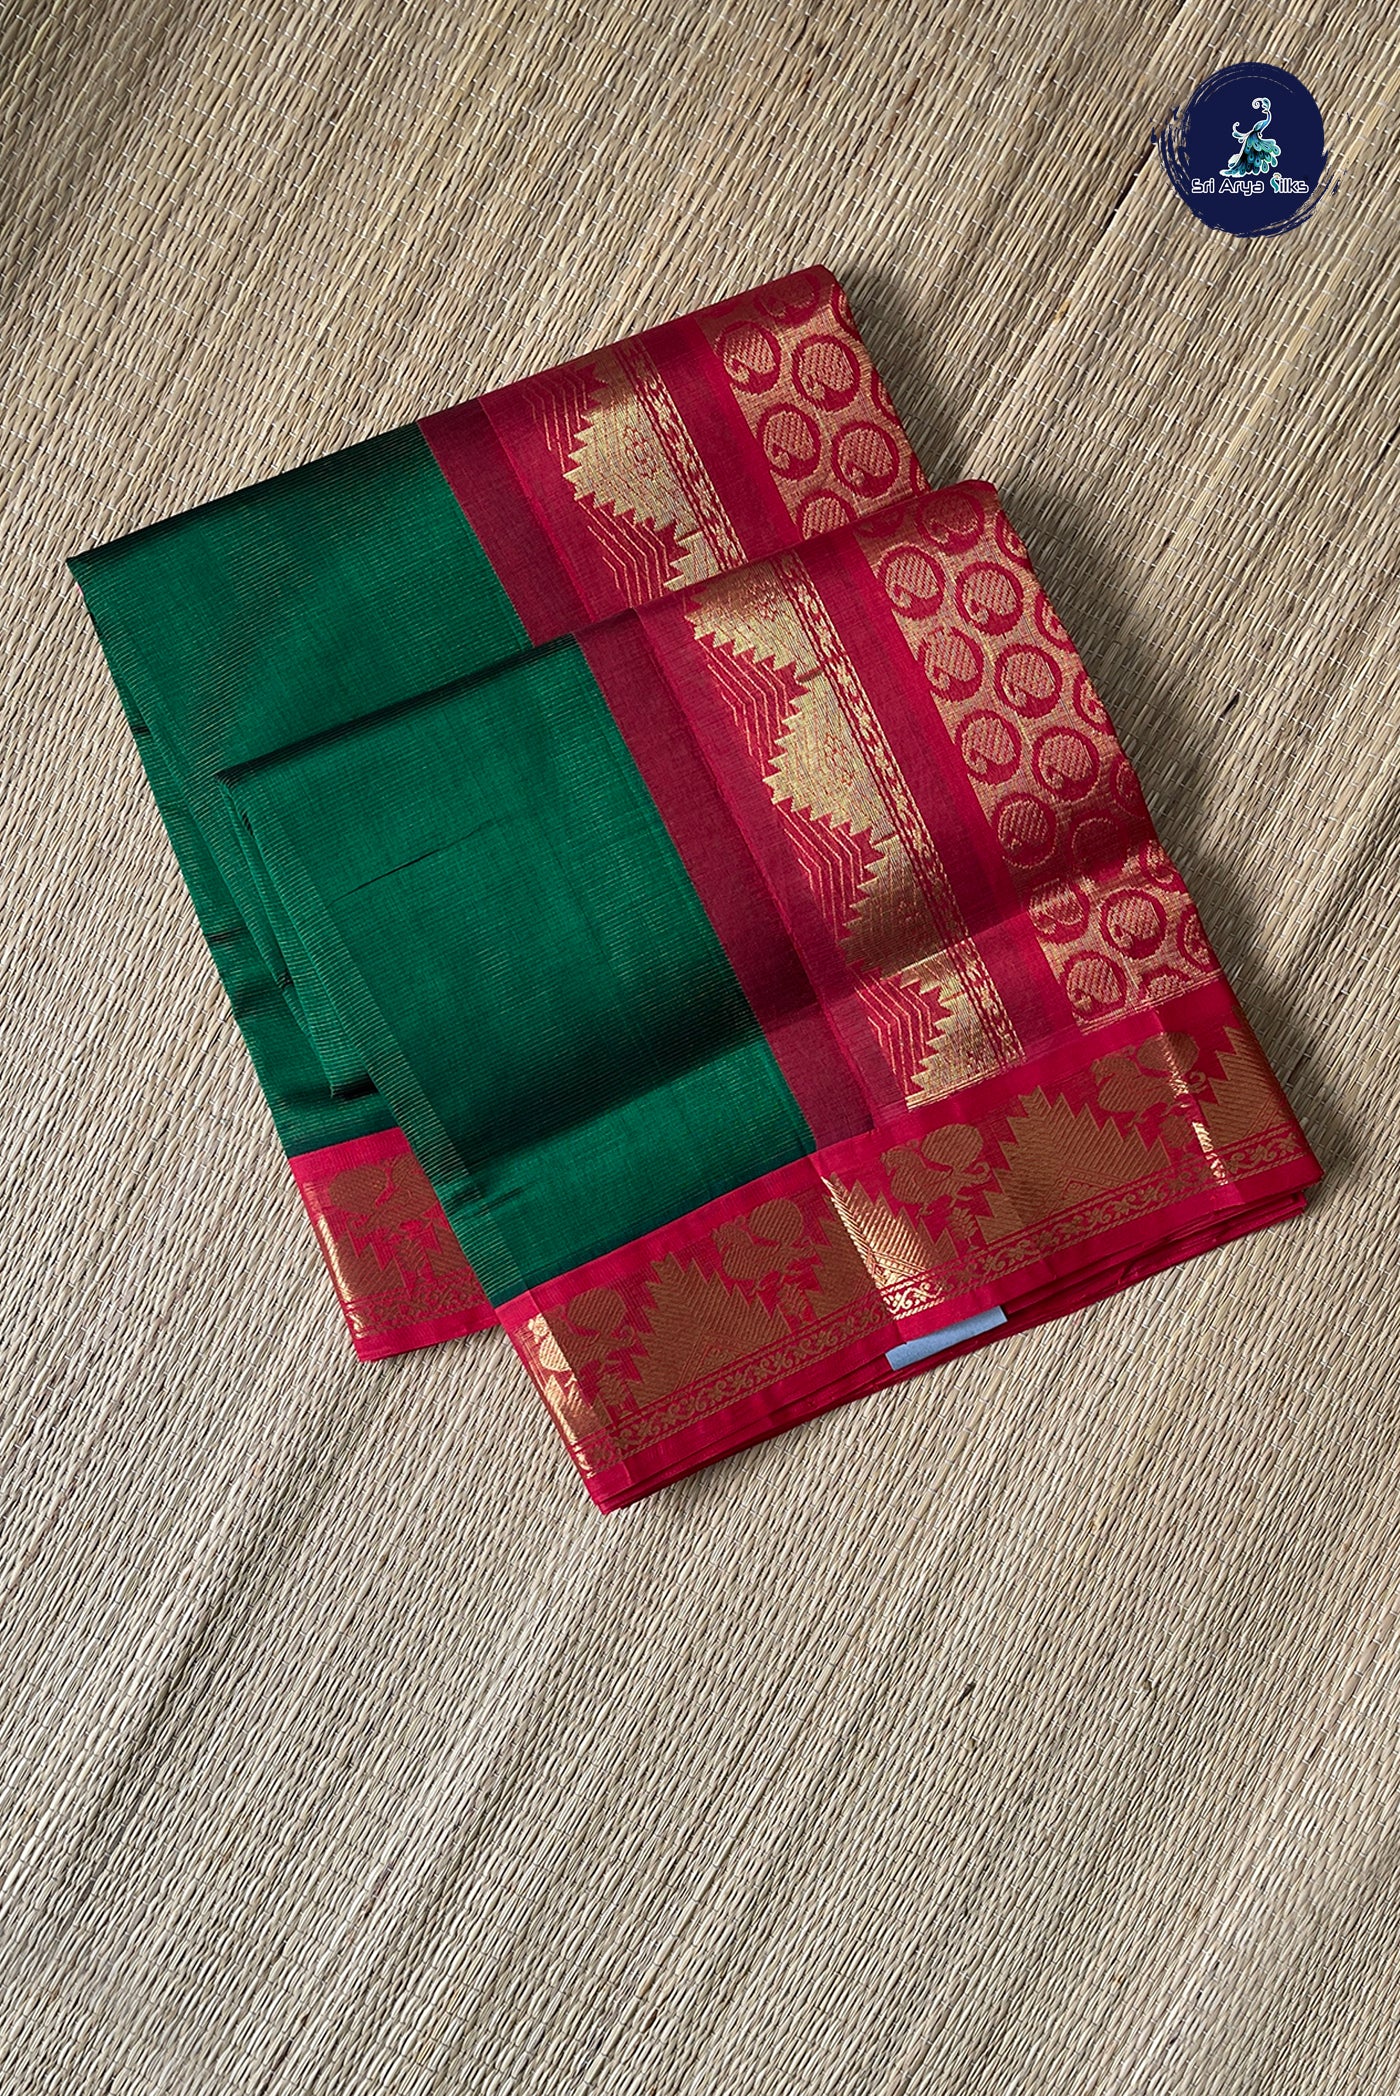 Green Vaira Oosi Silk Cotton Saree With Vaira Oosi Pattern